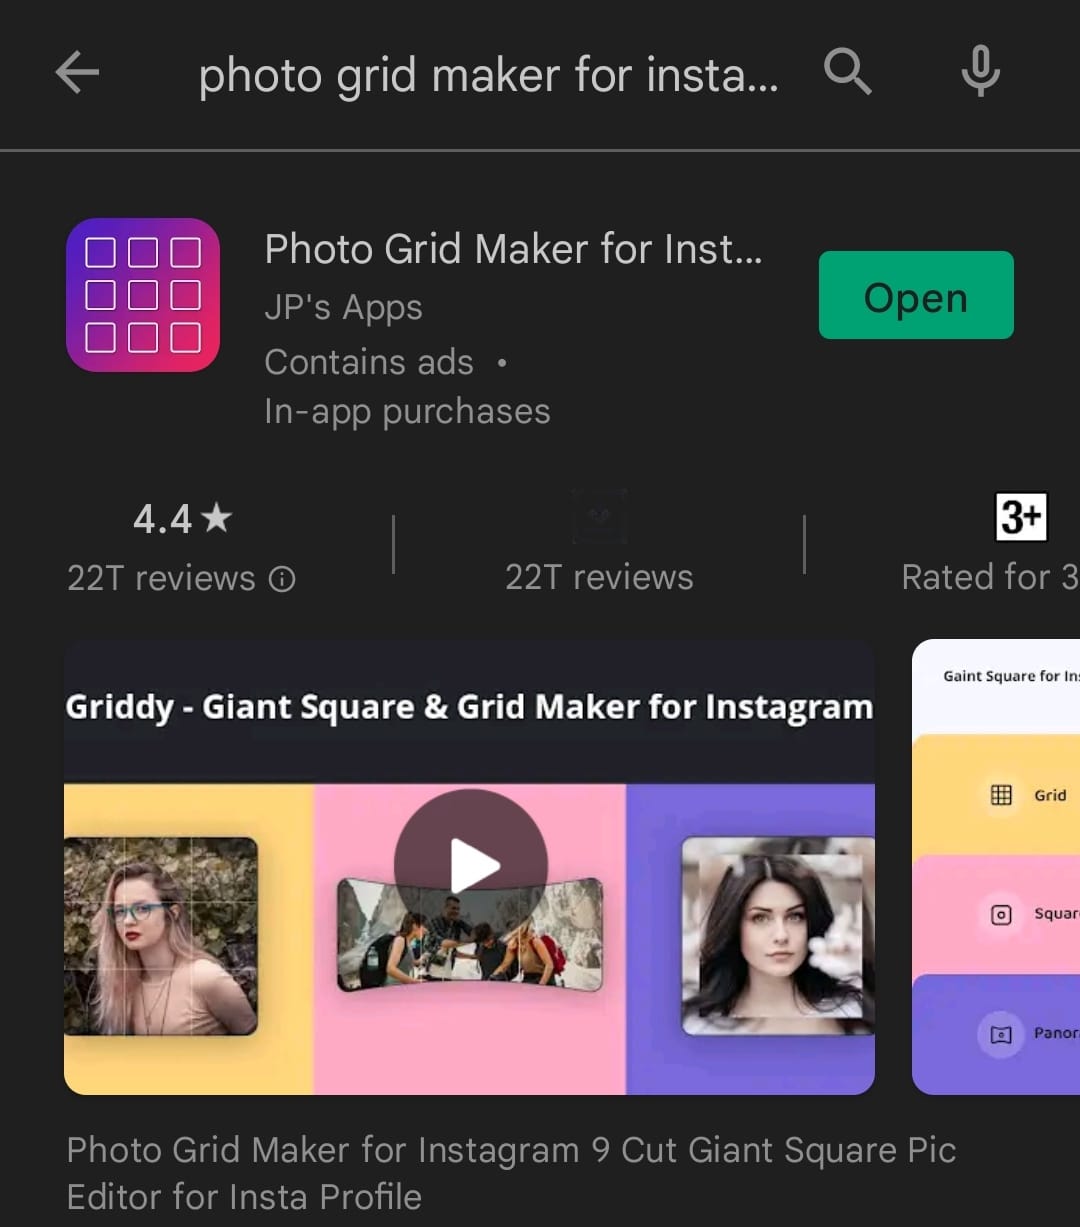 Uruchom Sklep Play. Wyszukaj i zainstaluj aplikację o nazwie Photo Grid Maker na Instagram | Jak zdobyć najlepszą dziewiątkę 2016 roku na Instagramie